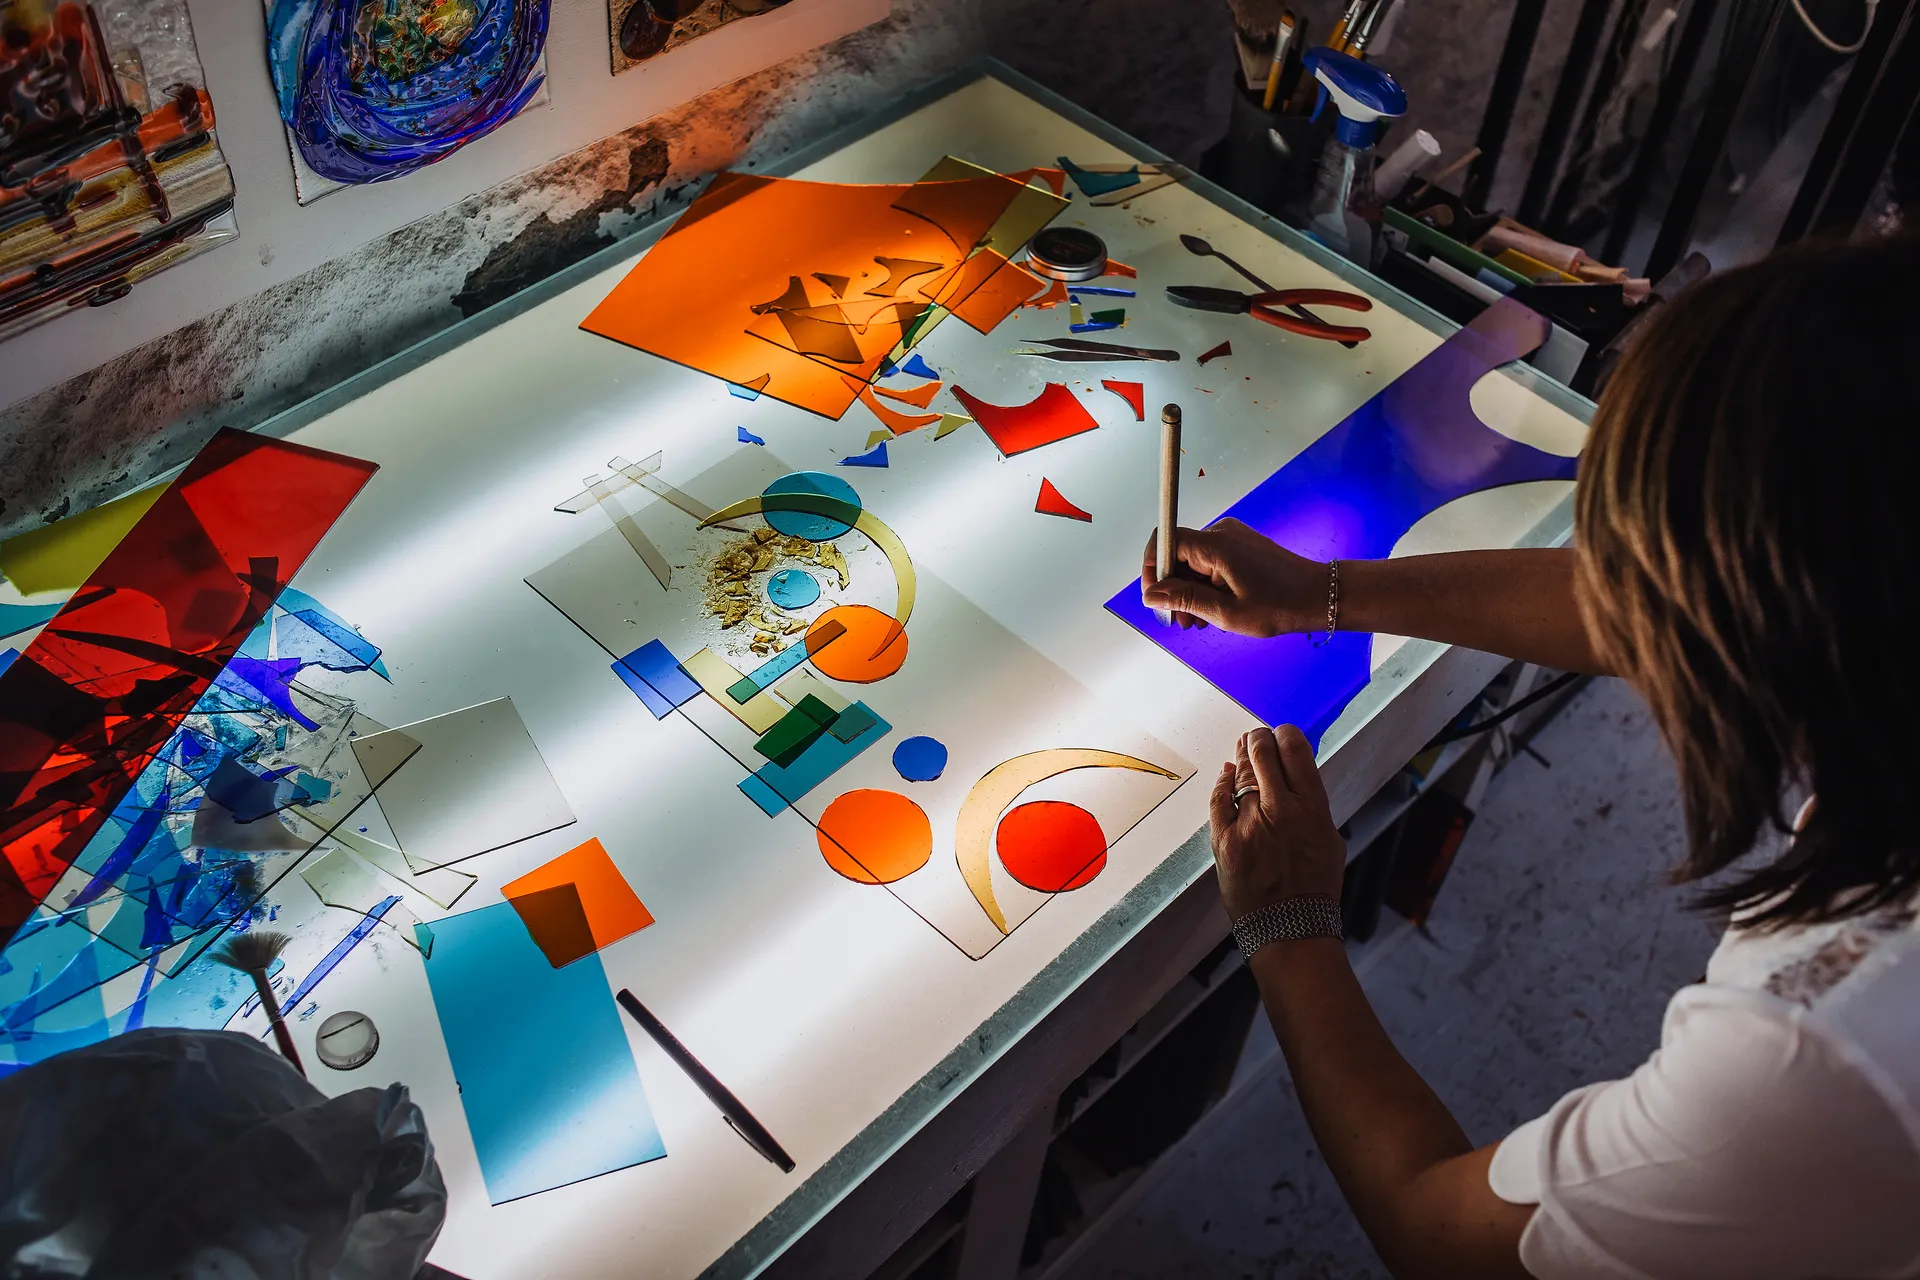 travail en cours, du verre de couleur découpé en formes géométriques est disposé sur une table lumineuse